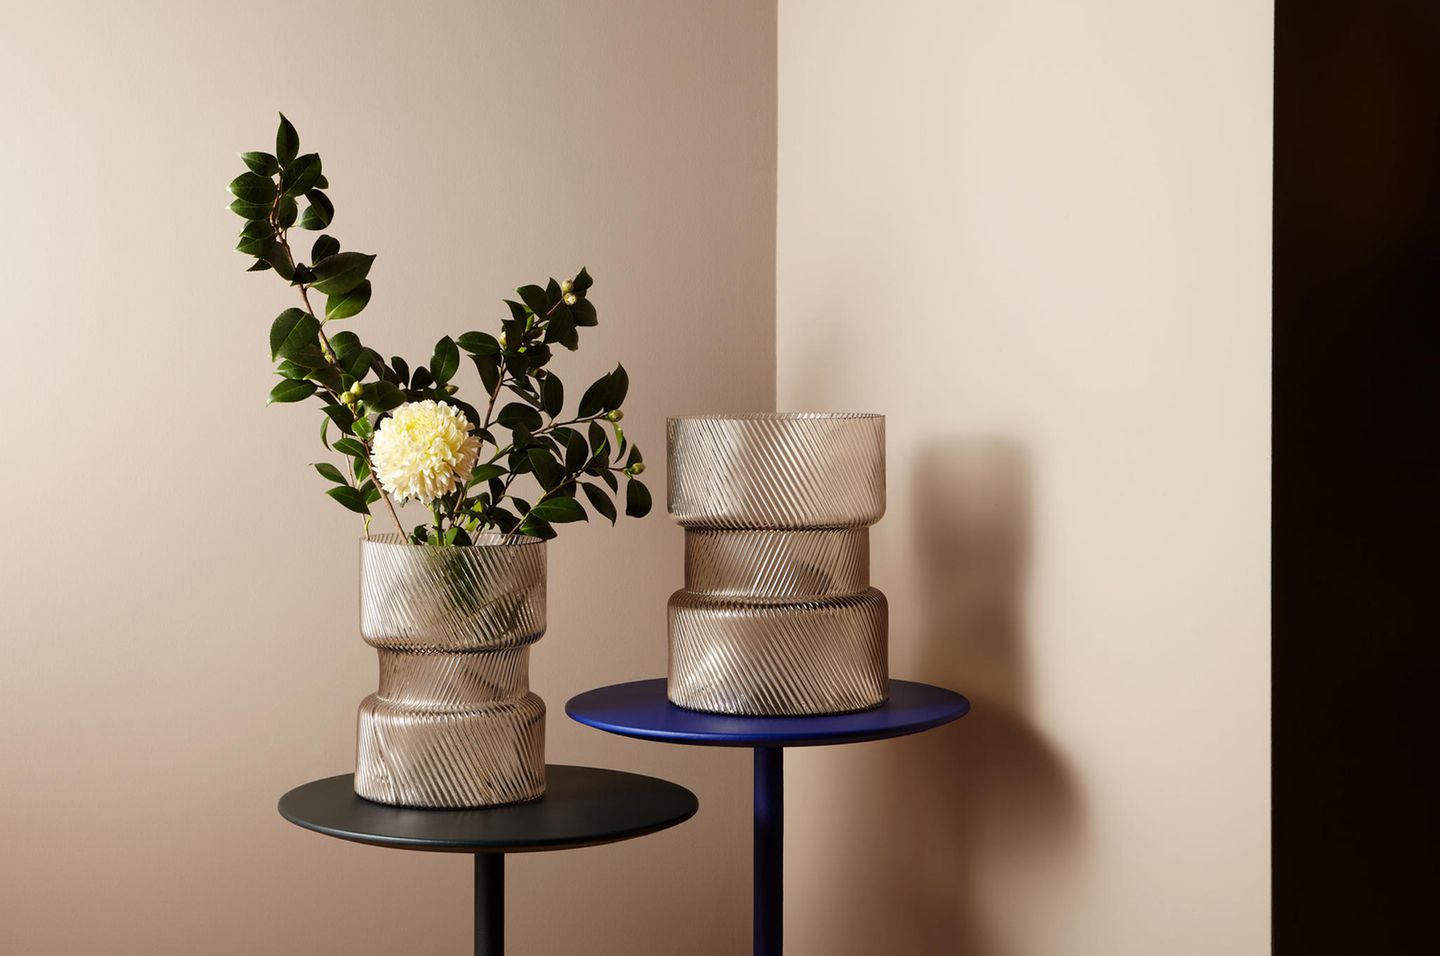 Zwei Vasen mit Reliefmuster vor sandfarbener Wand